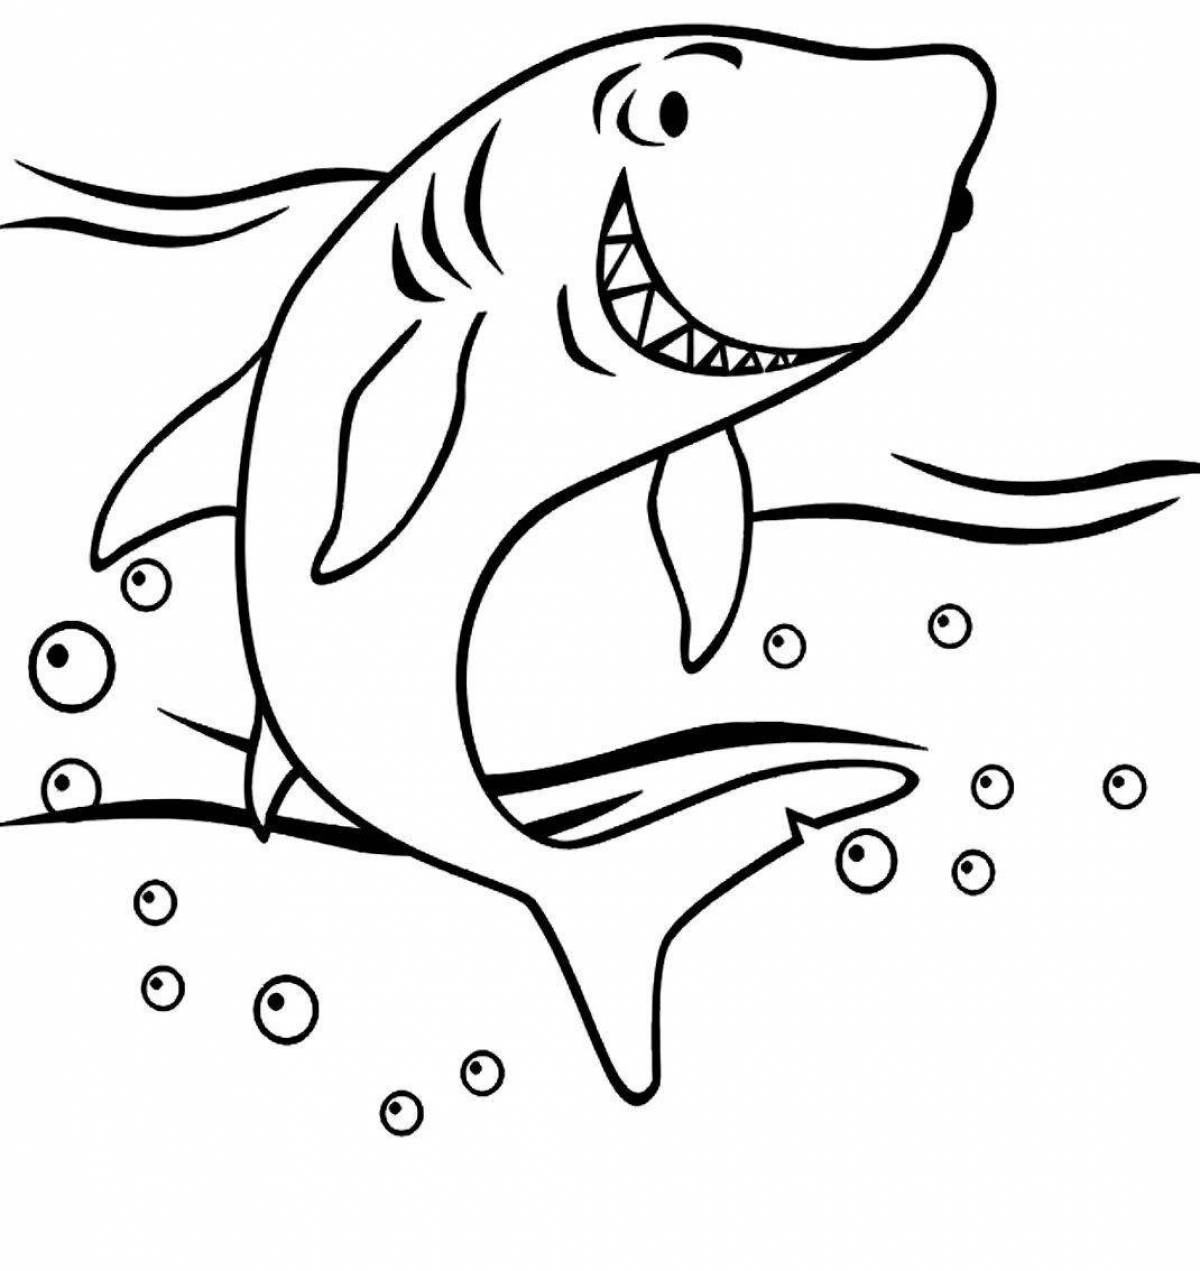 Веселая раскраска акулы для детей 4-5 лет